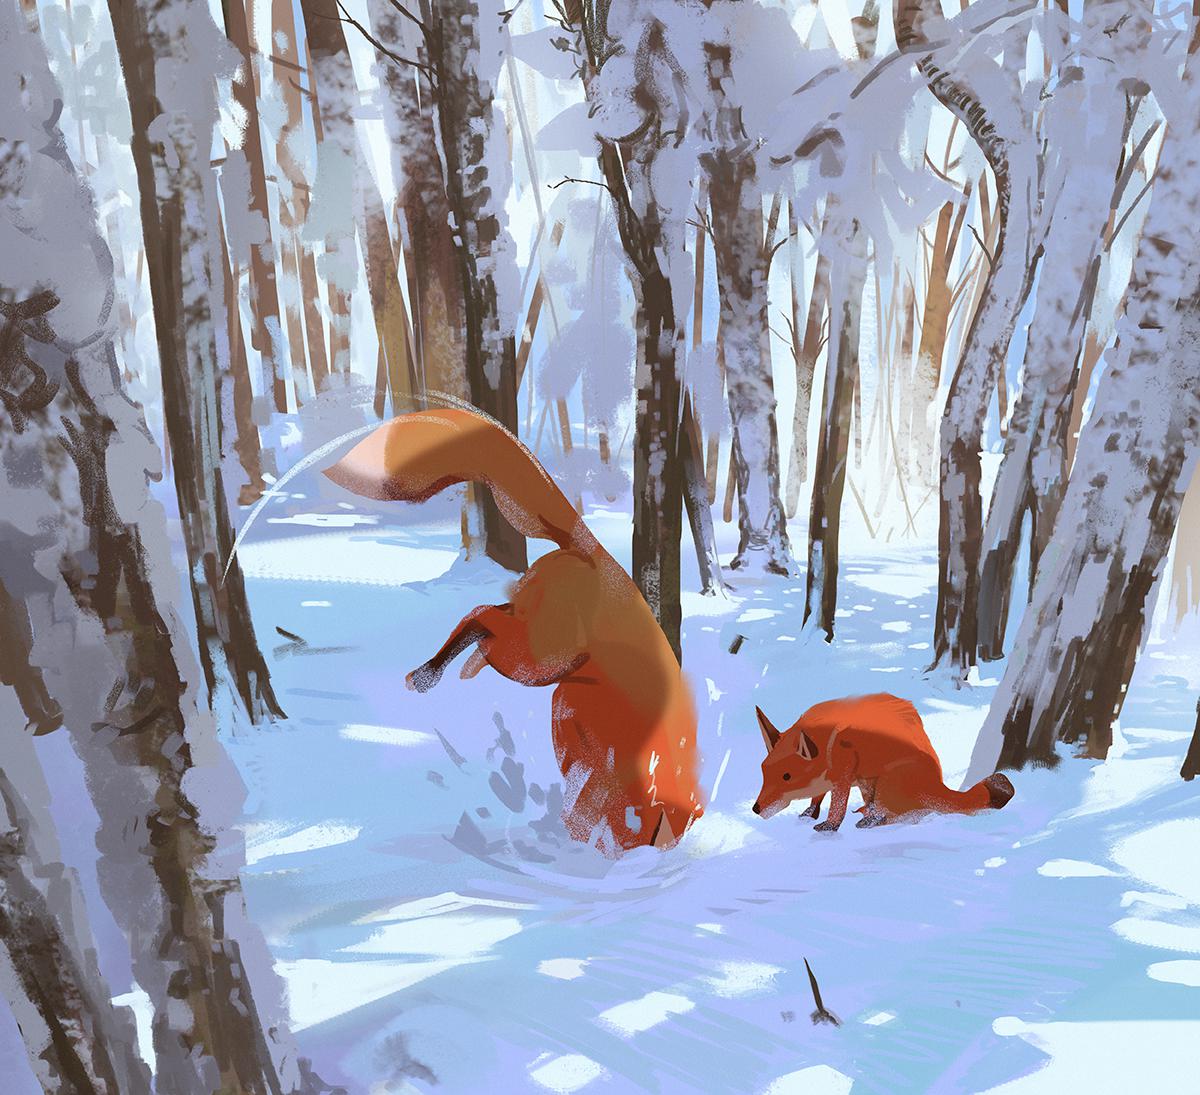 Hunting-illustrationconcept